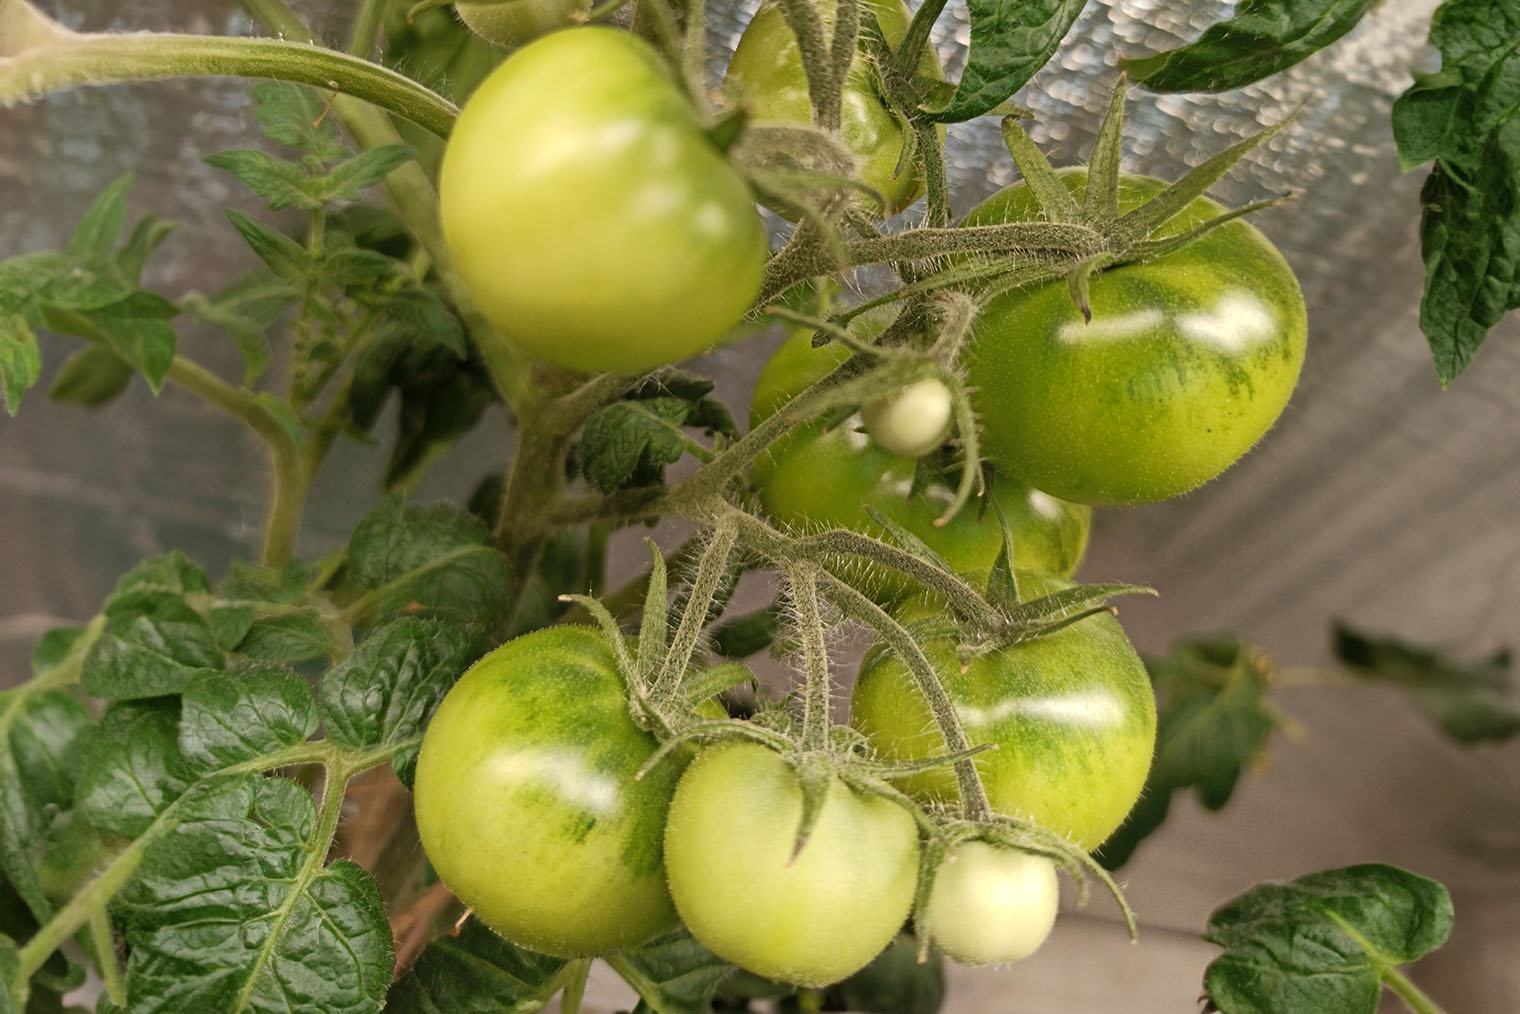 Пример такой проблемы на моих грядках: отдельные помидоры в кисти нормального размера, остальные мелкие, недоросшие или недоразвитые